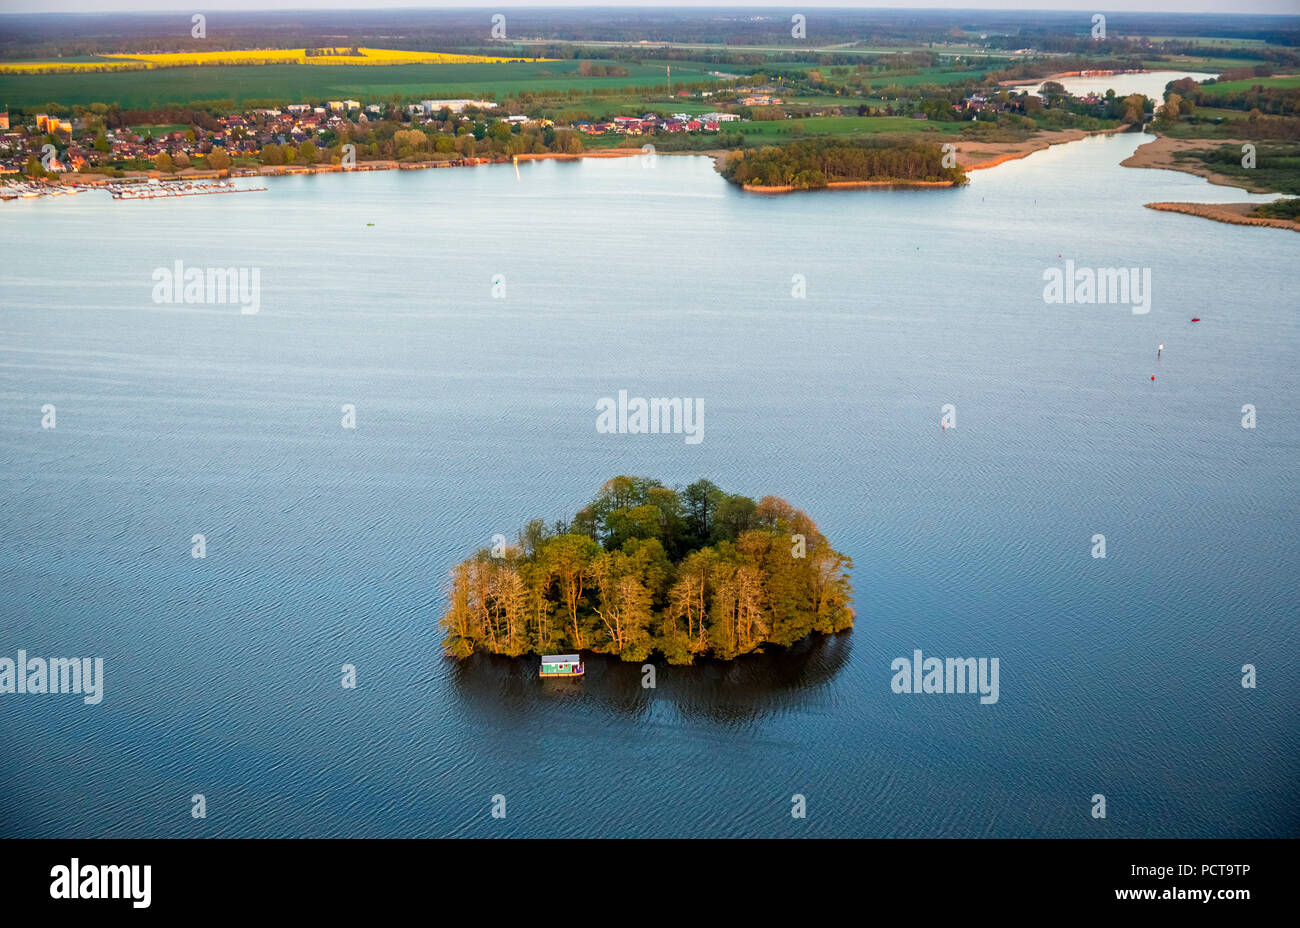 Kleine Lac Müritz avec l'île en forme de cœur, péniche et bateau d'excursion, coucher de soleil, Vipperow, Plateau des lacs Mecklembourgeois, Mecklembourg-Poméranie-Occidentale, Allemagne Banque D'Images